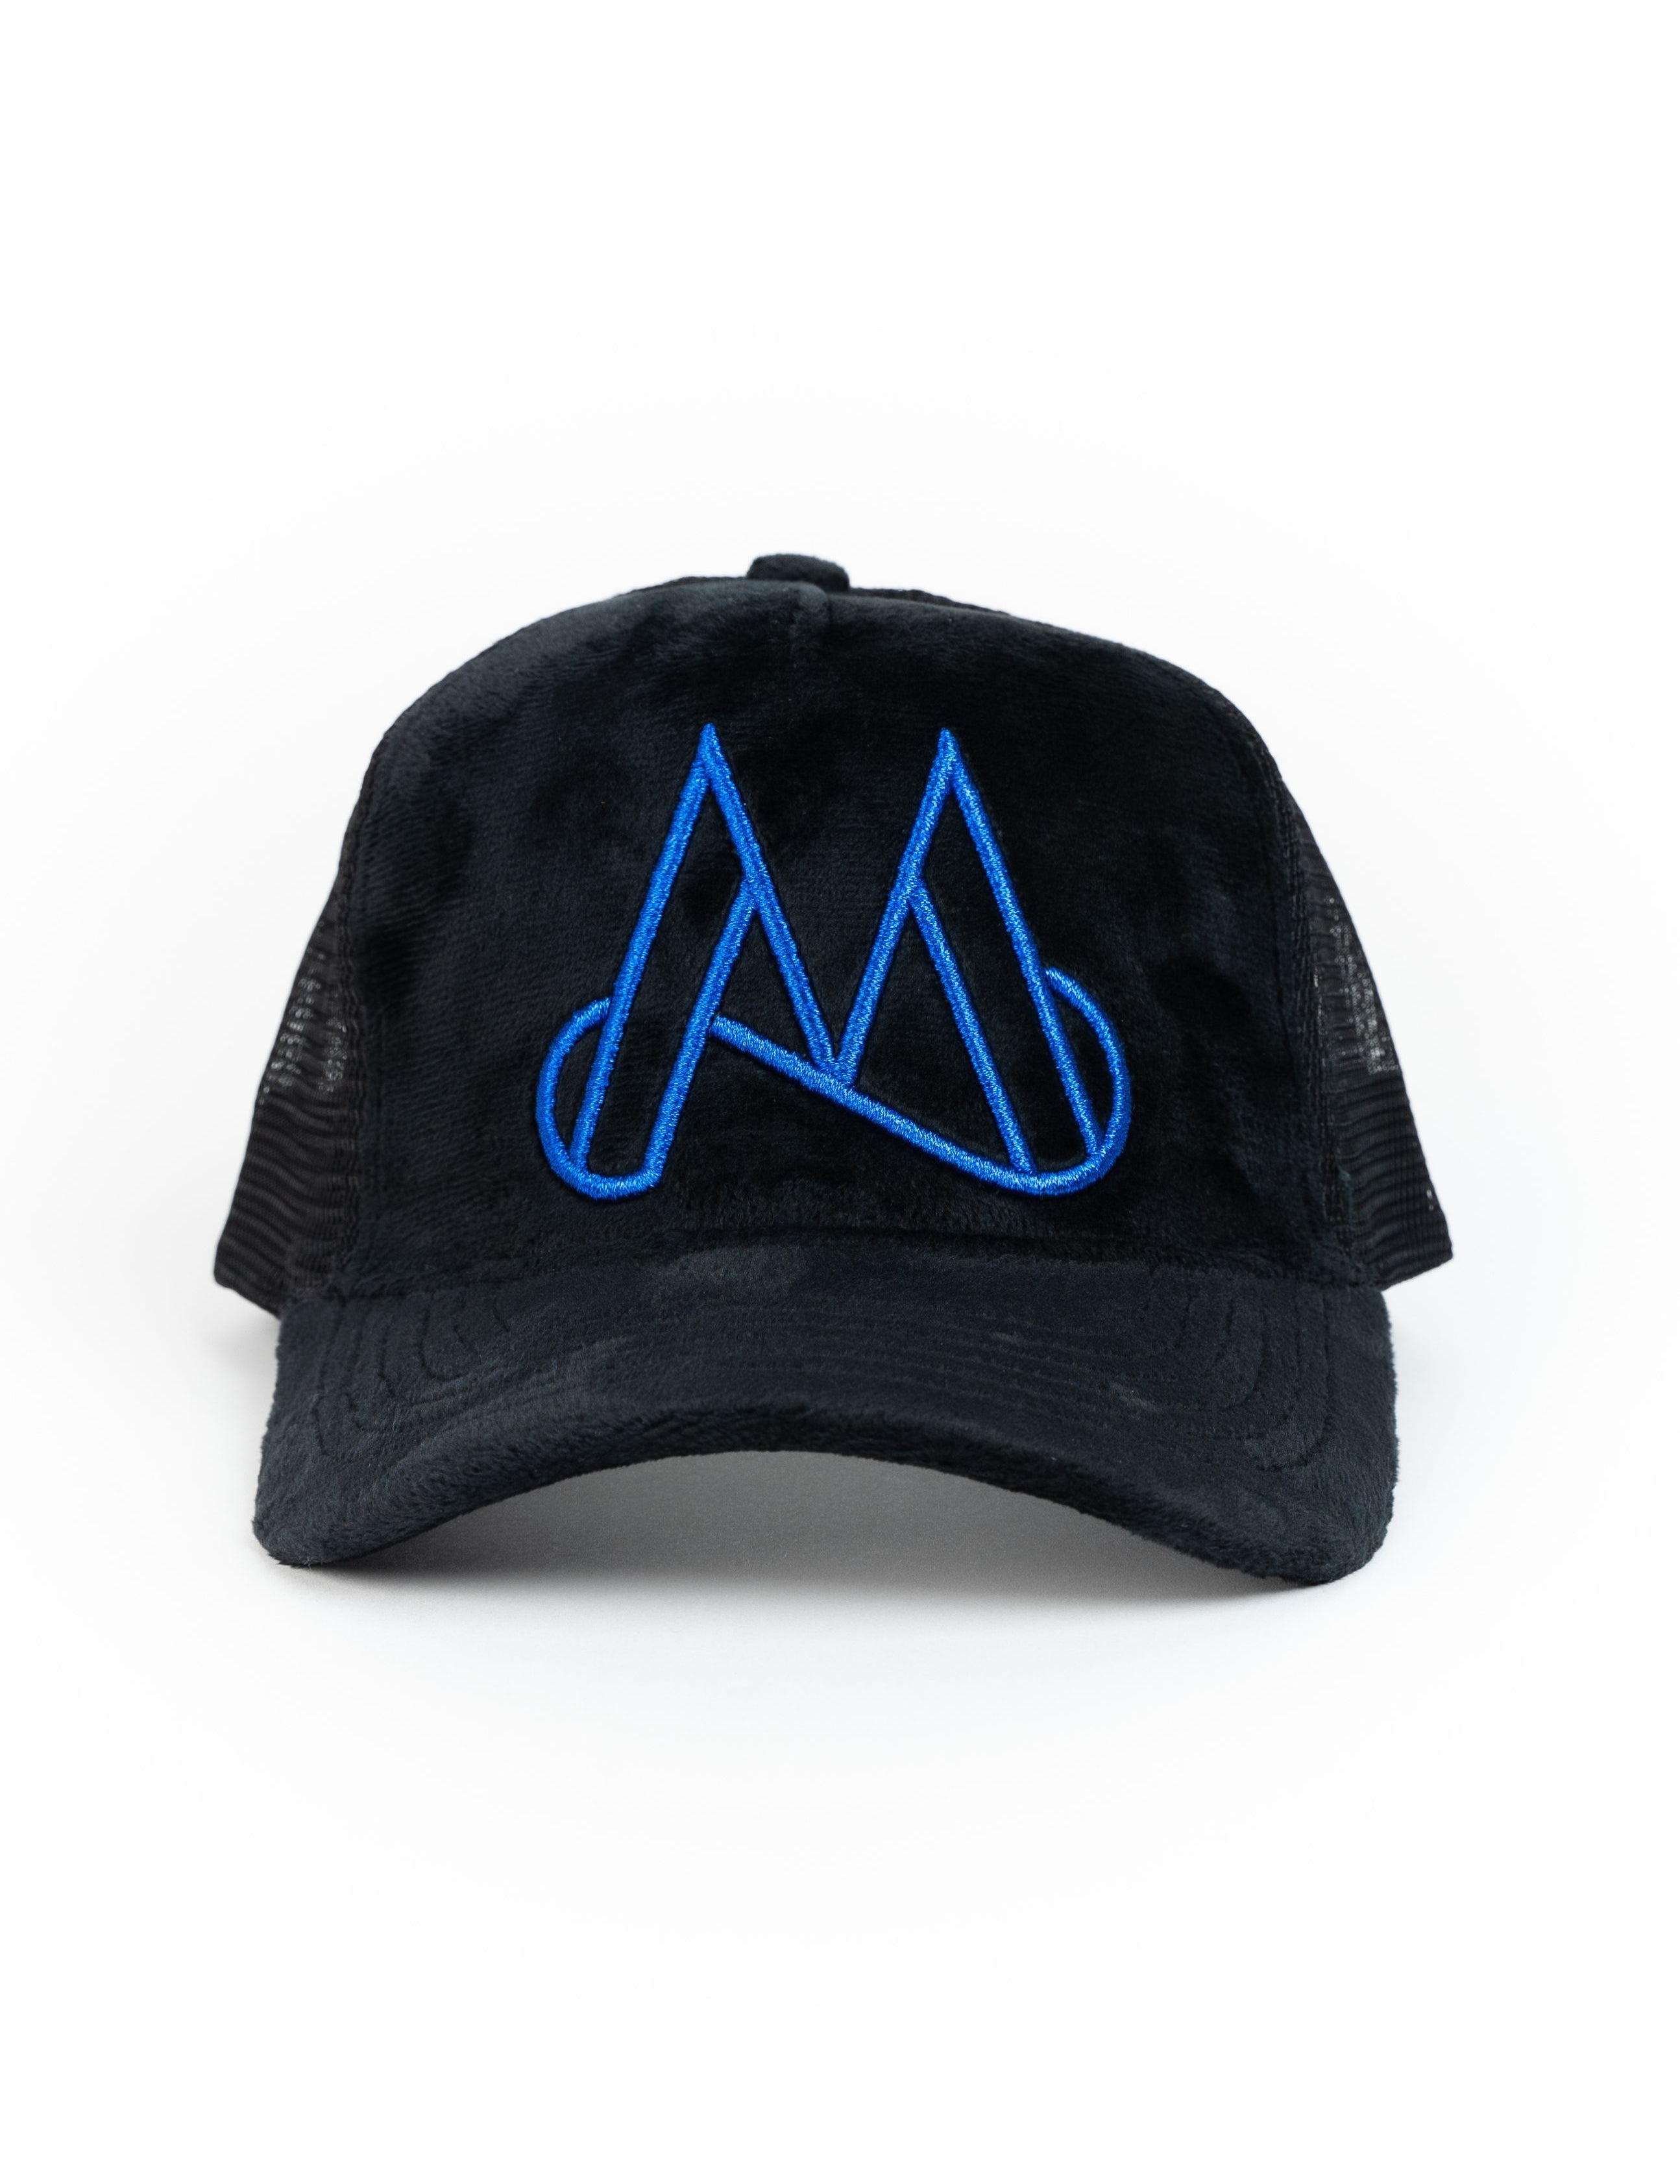 MAGGIORE Unlimited M Logo Black Cap - Blue Logo - MAGGIORE